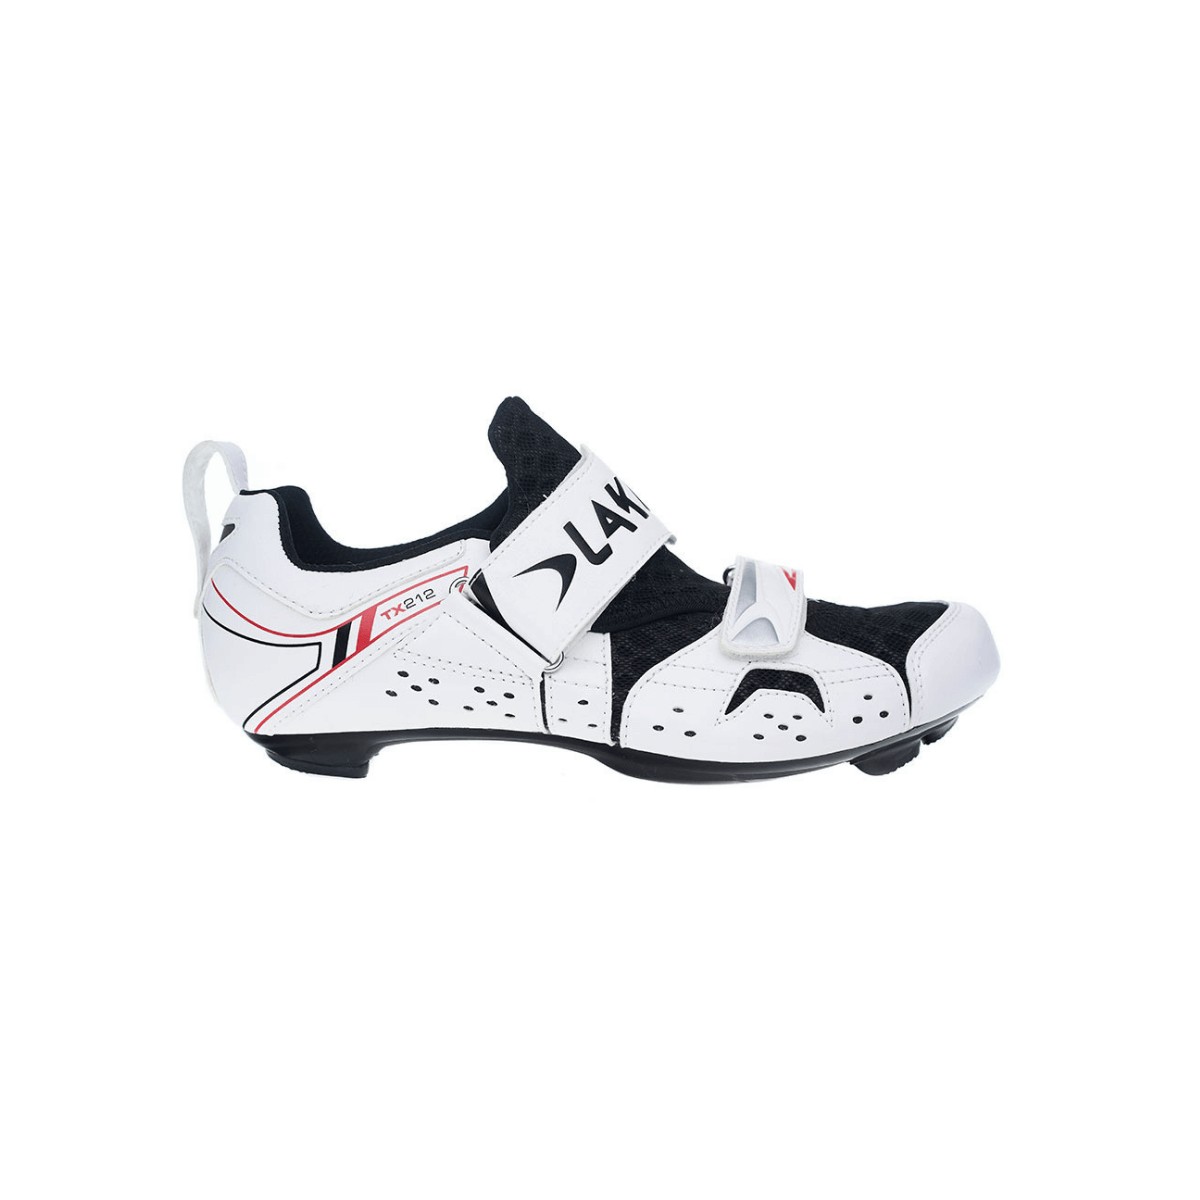 Lake Triatlon TX212 Shoes Black White, Size 44 - EUR